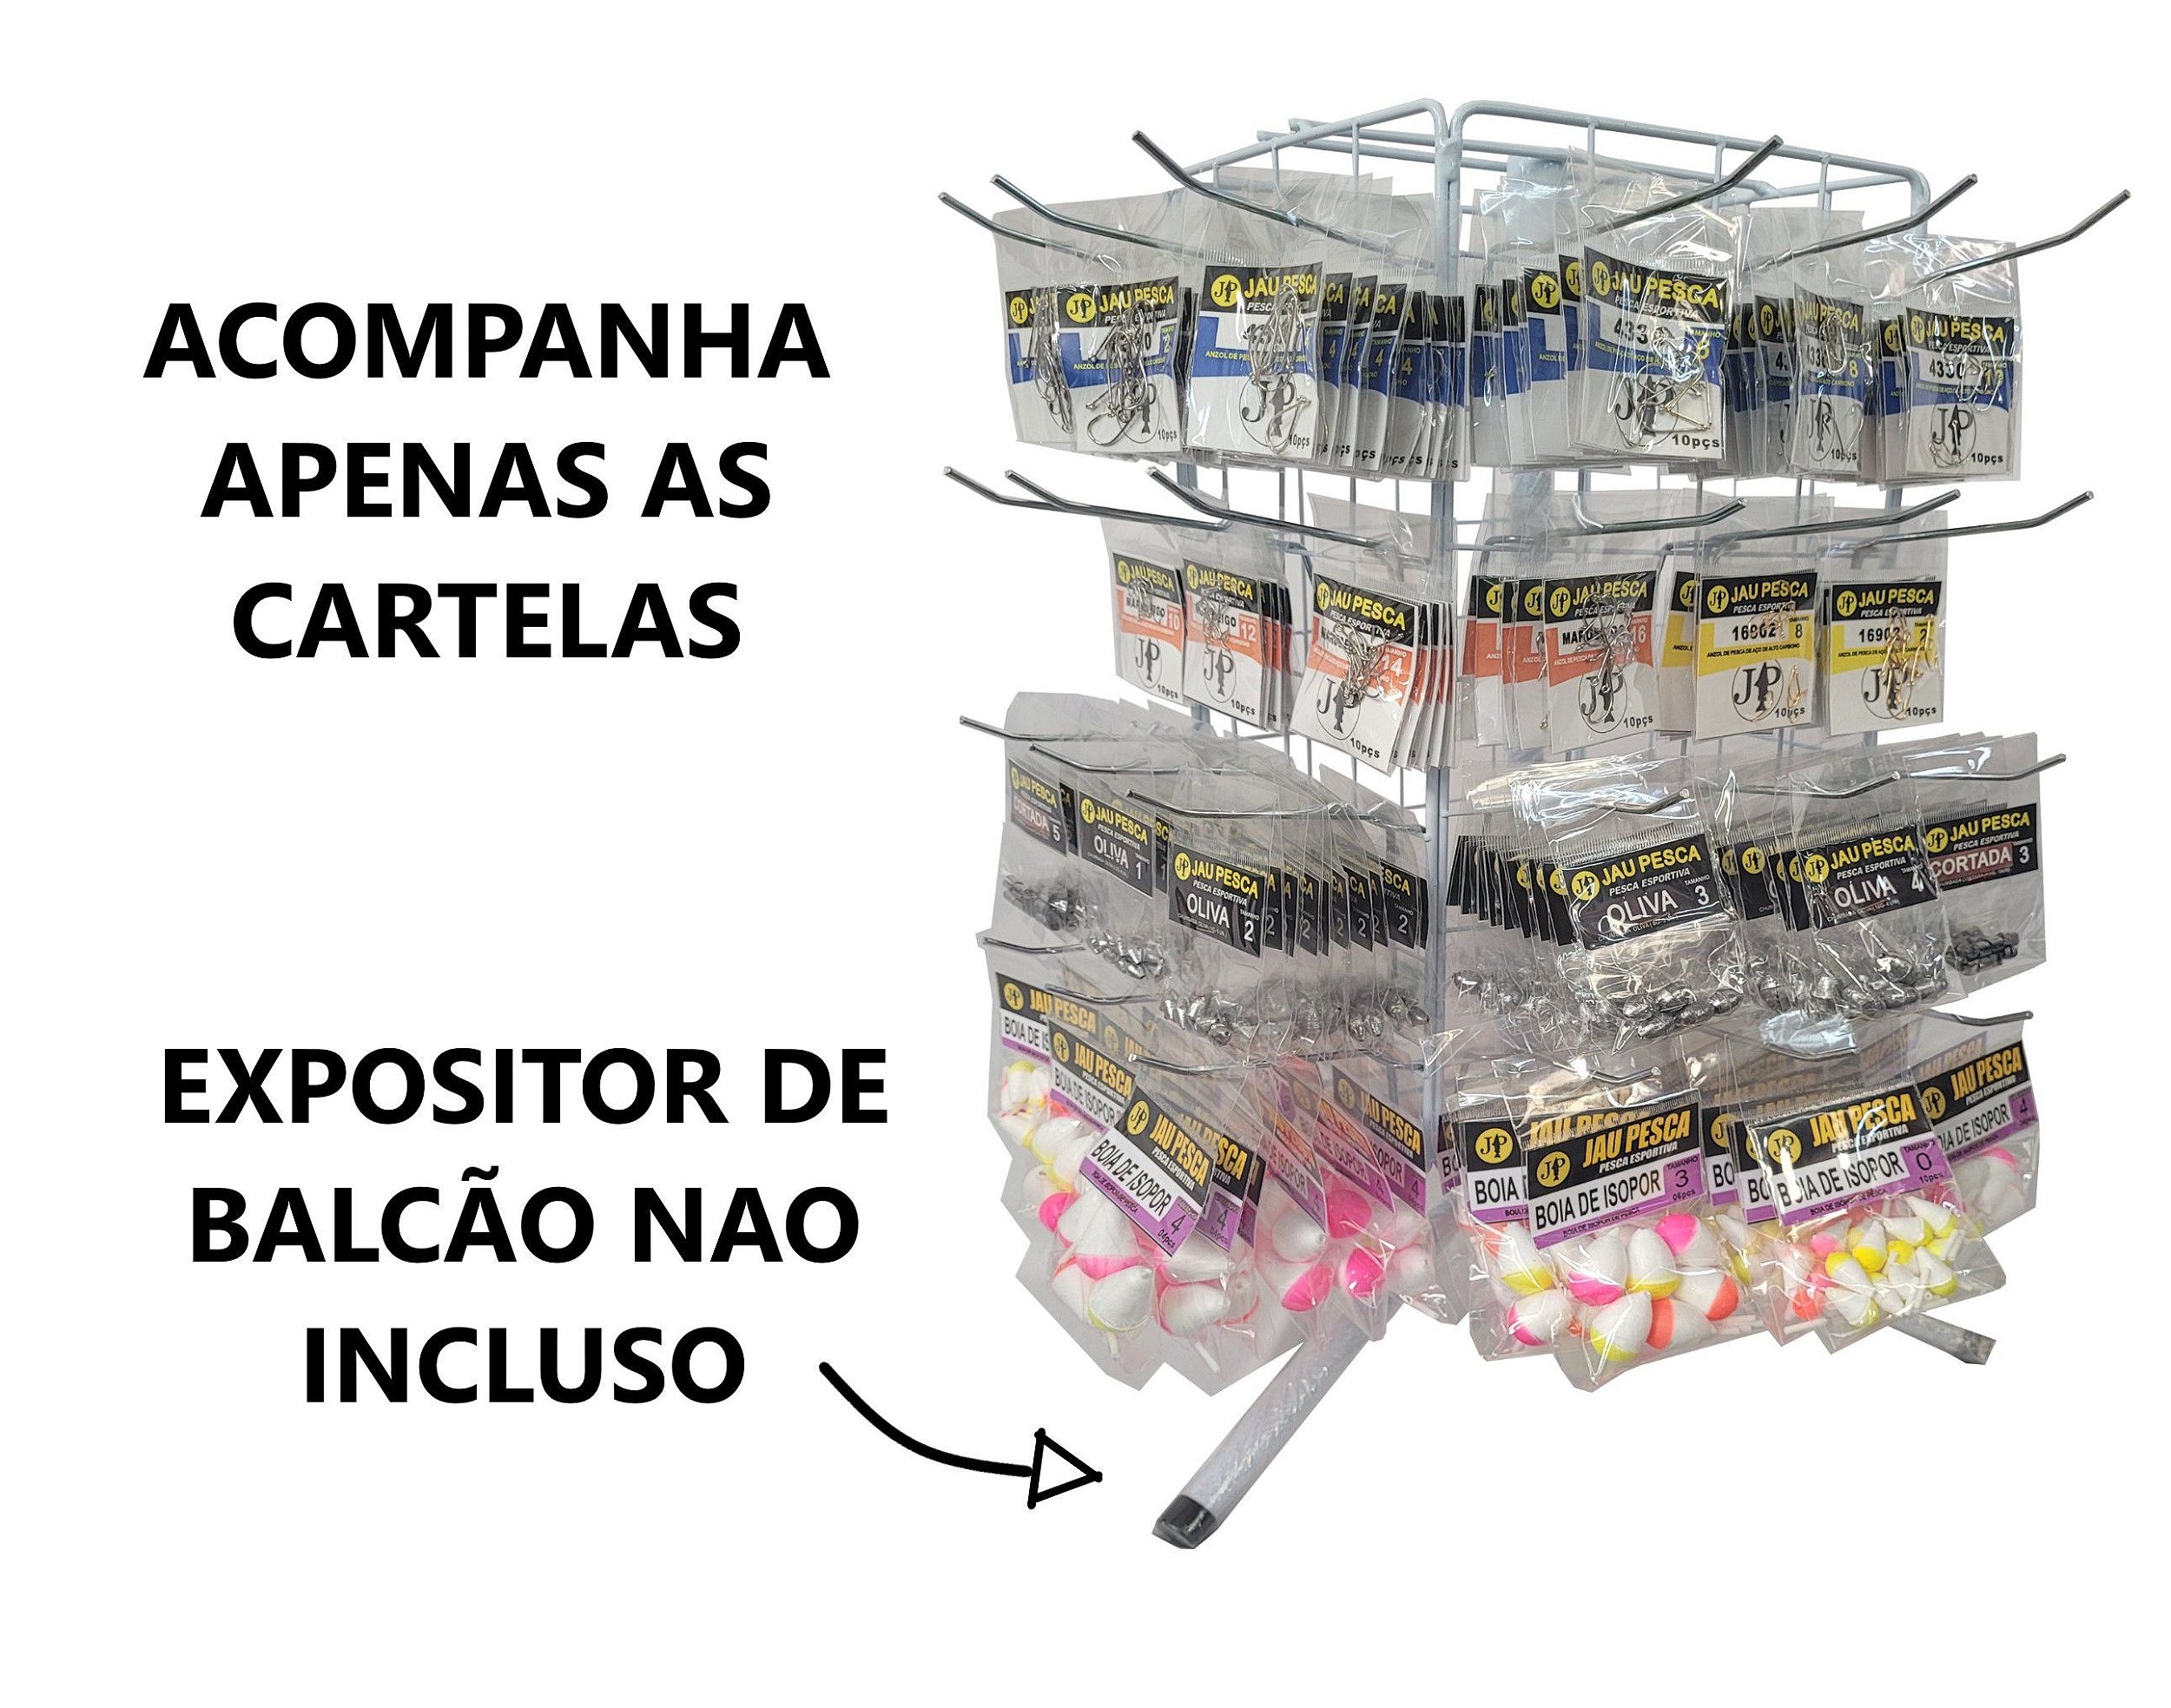 Kit De Pesca Duplo Vara + Molinete e Acessorios (Completo) - Jaú Pesca - A  Maior loja de Pesca do Brasil